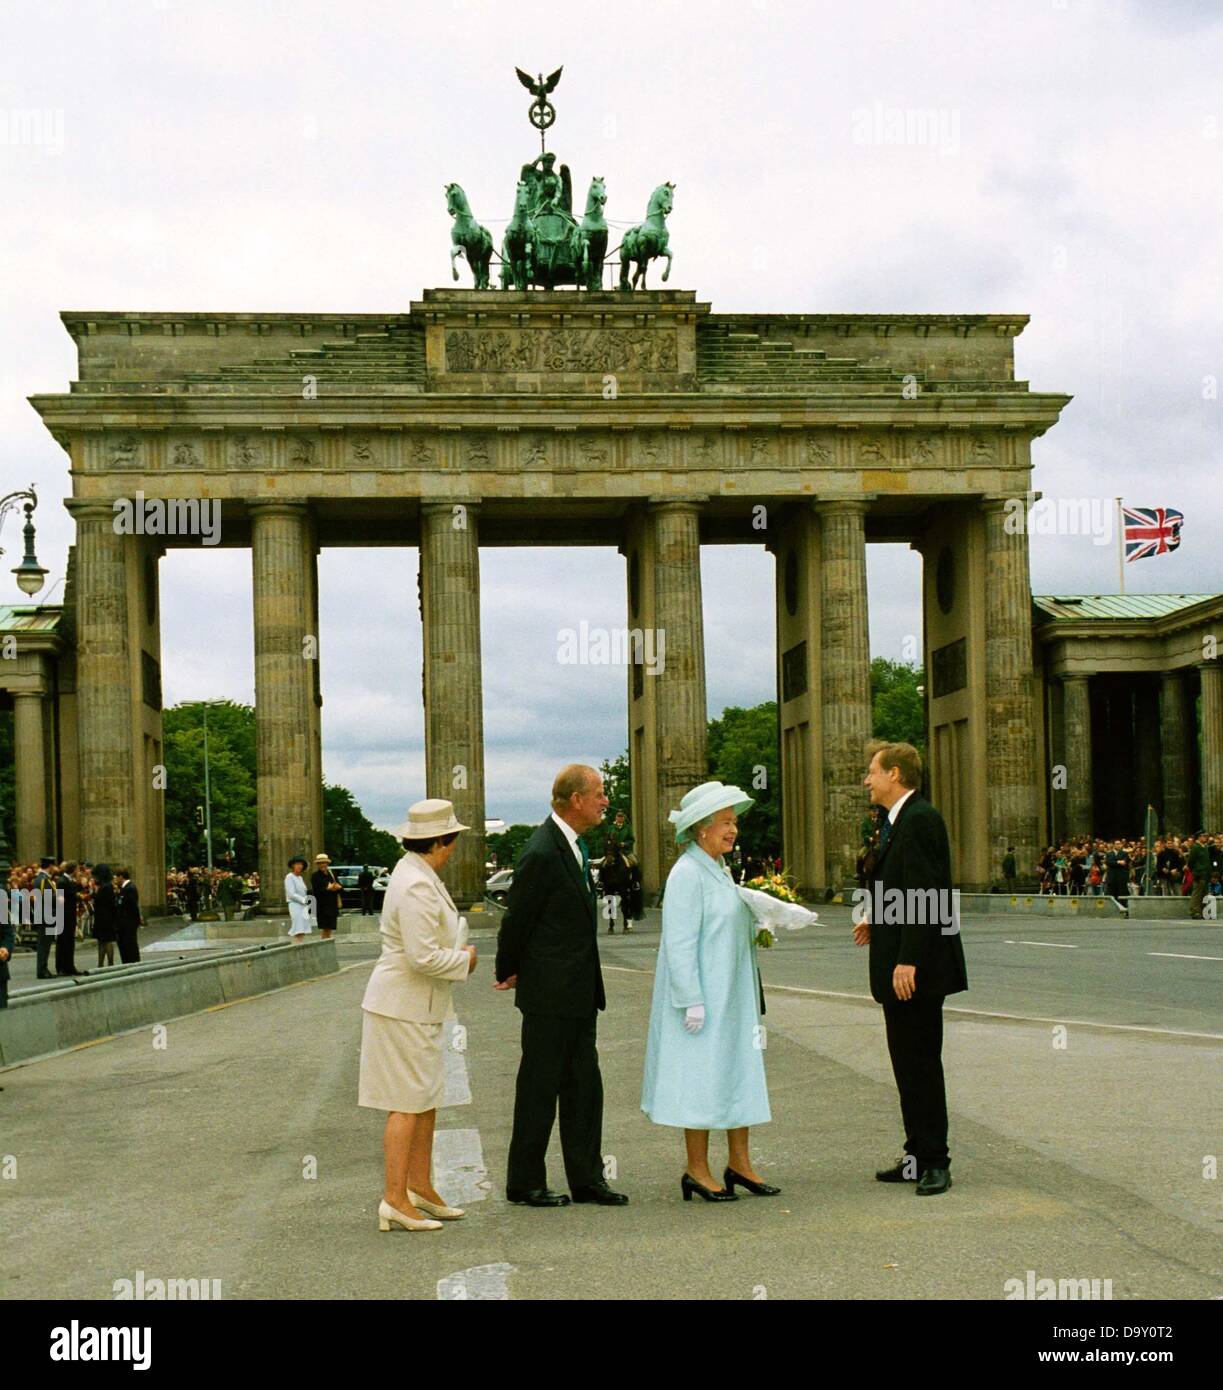 Monika Diepgen, Prince Philipp, Queen Elizabeth II. and governing mayor of Berlin Eberhard Diepgen in front of Brandenburg Gate. Stock Photo